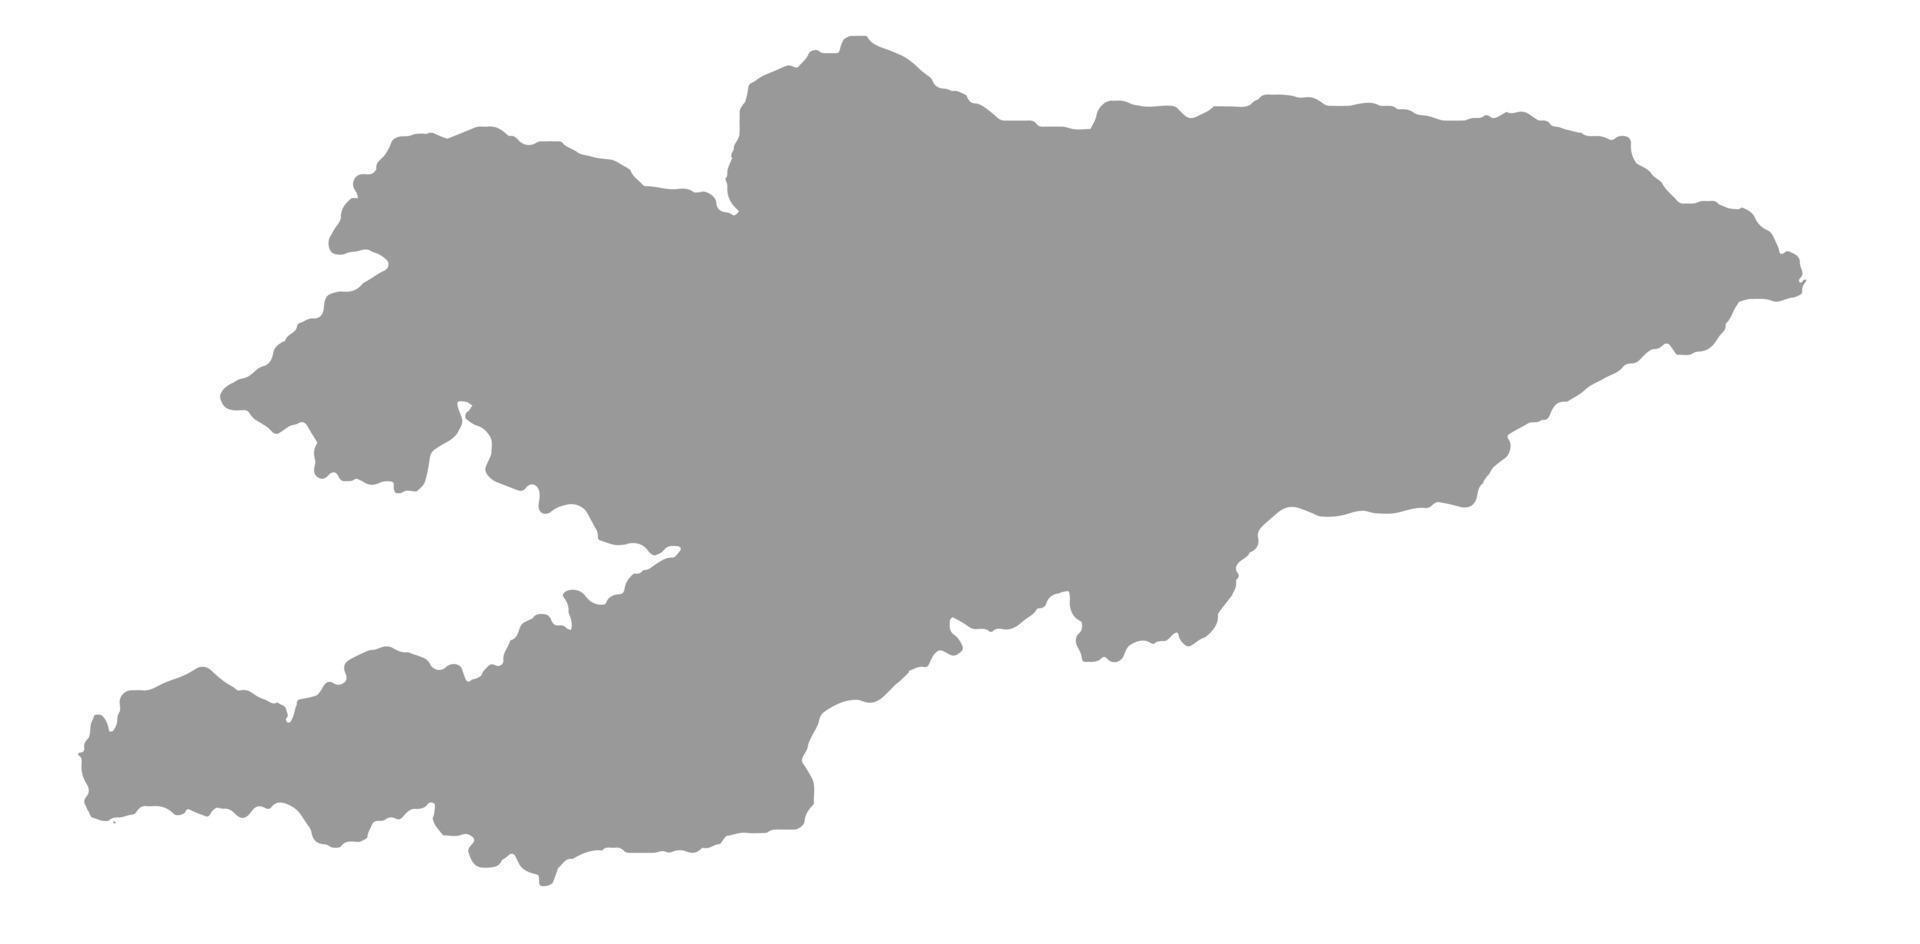 mappa del kirghizistan su png o sfondo trasparente.simbolo del kirghizistan.illustrazione vettoriale